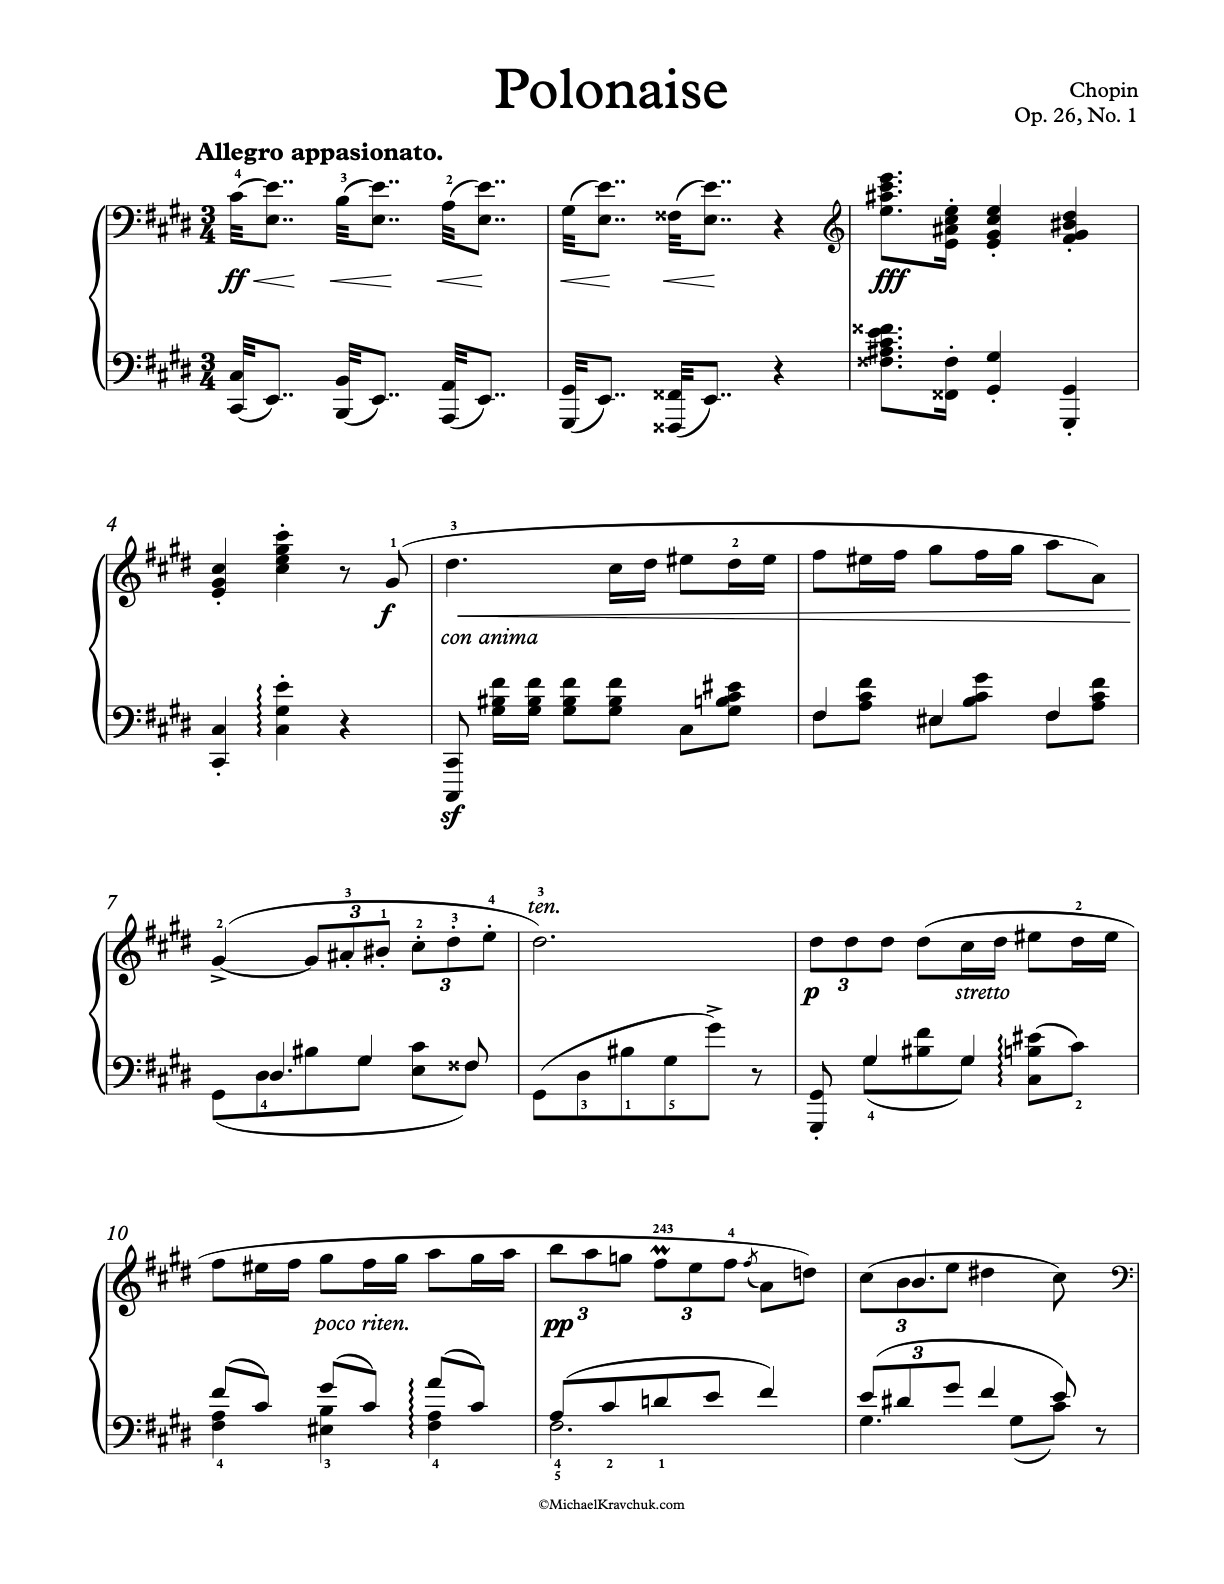 Free Piano Sheet Music - Polonaise In C# Minor - Op. 26, No. 1 - Chopin